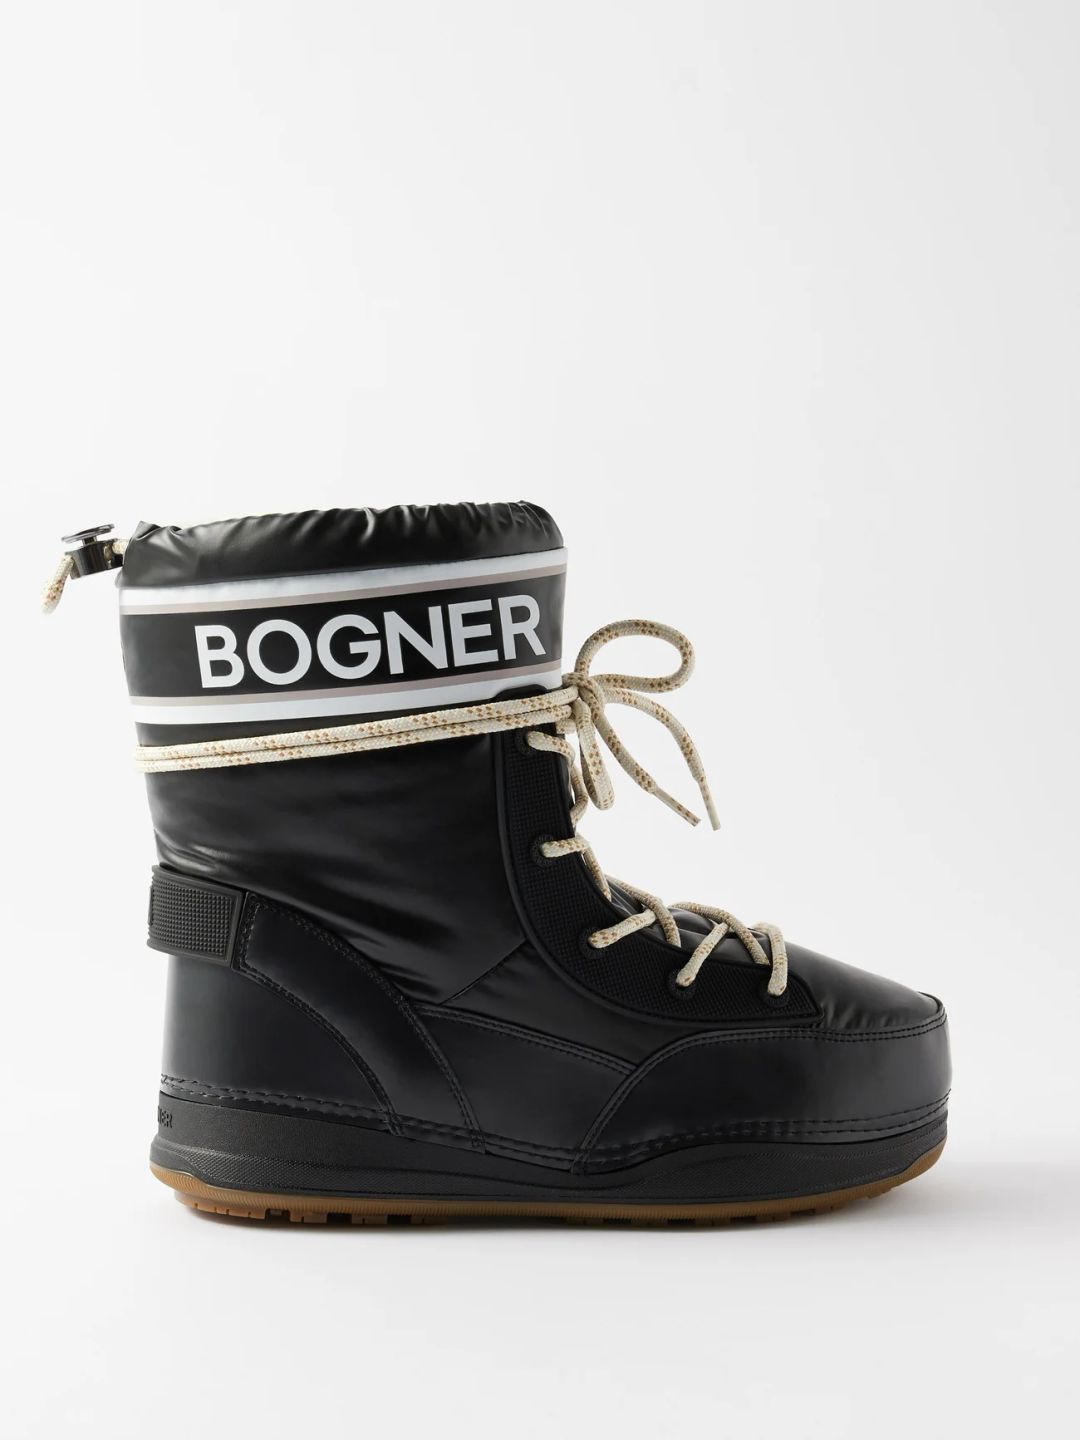 BOGNER La Plagne 1 snow boots